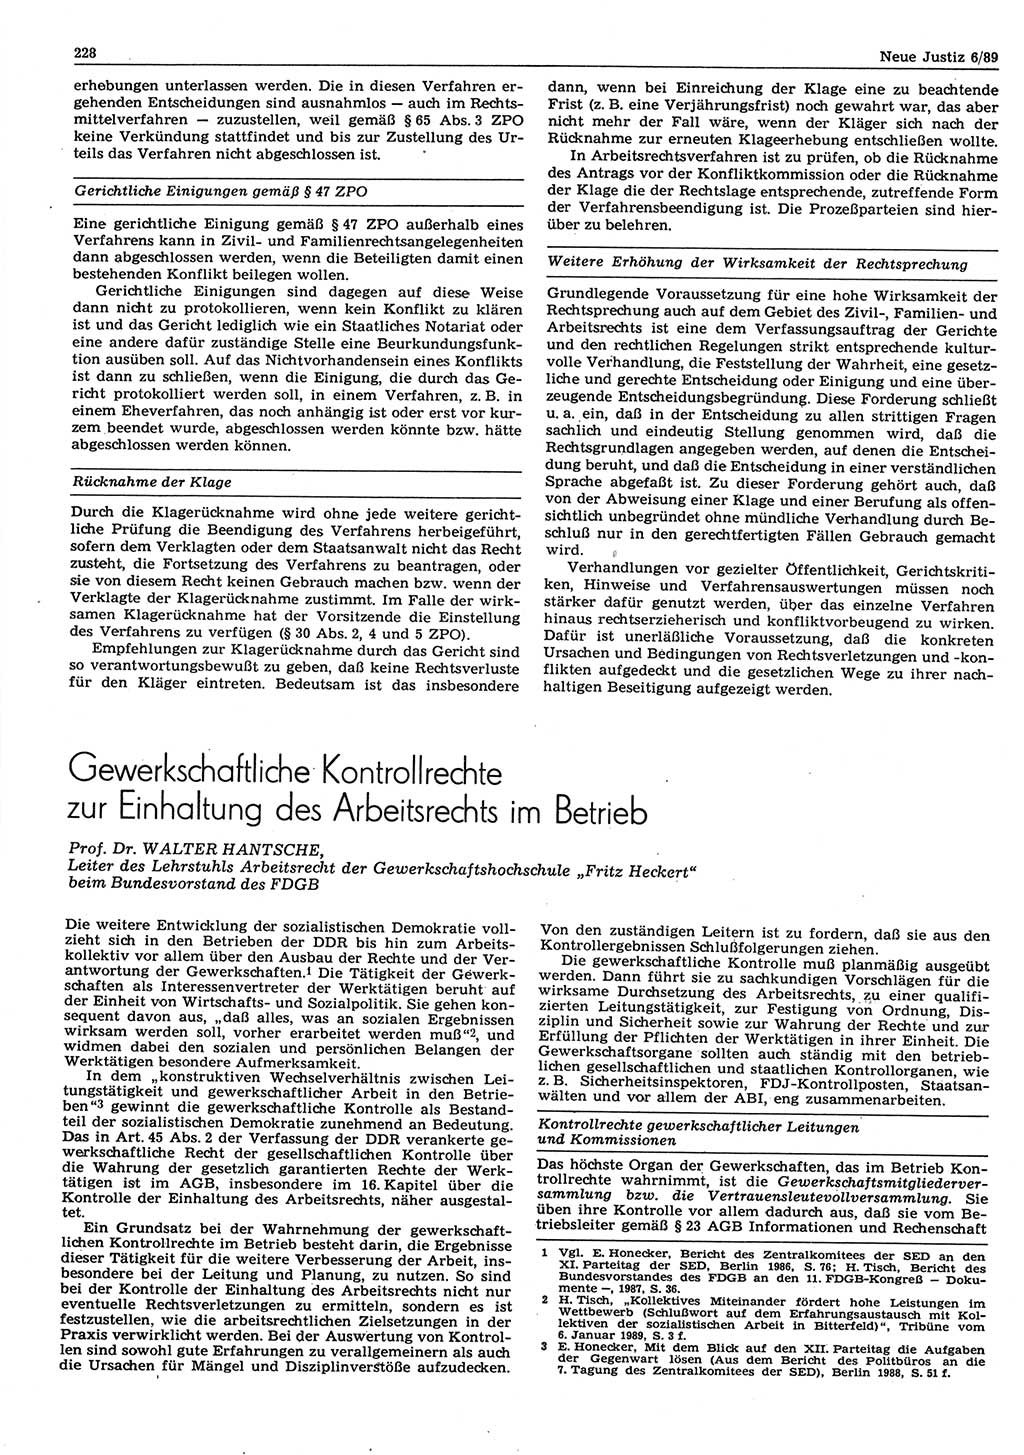 Neue Justiz (NJ), Zeitschrift für sozialistisches Recht und Gesetzlichkeit [Deutsche Demokratische Republik (DDR)], 43. Jahrgang 1989, Seite 228 (NJ DDR 1989, S. 228)